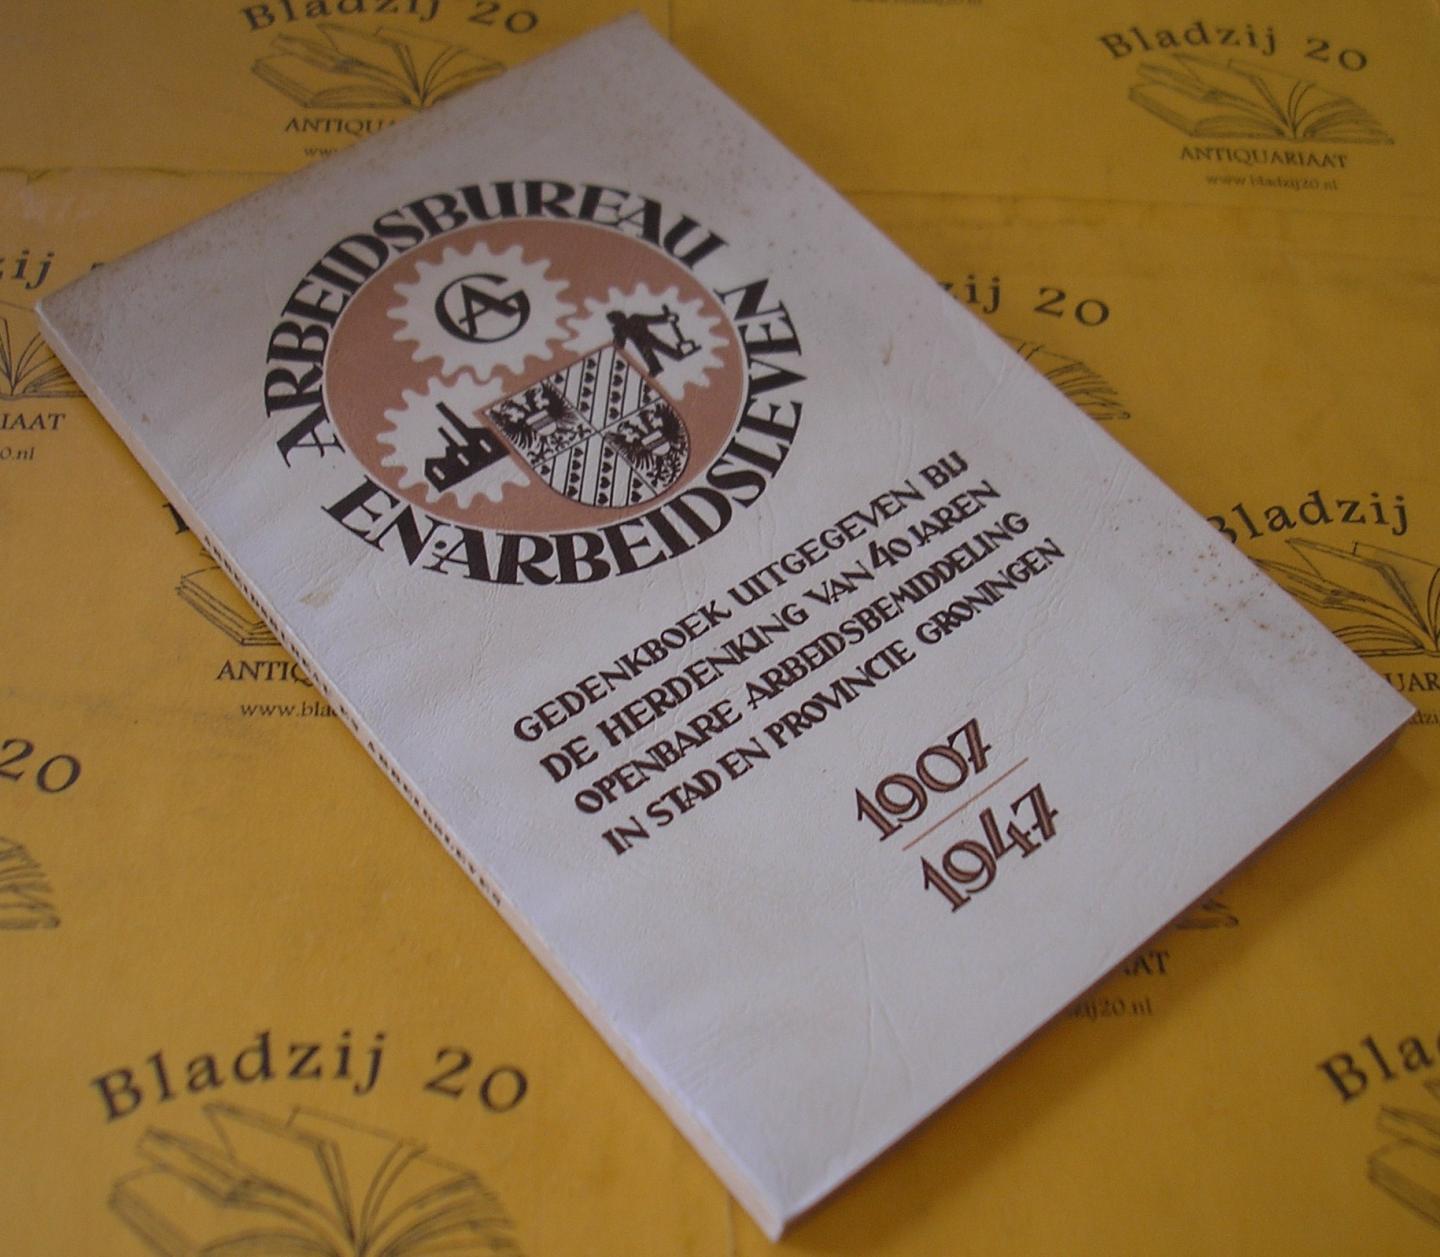 Van der Mast, Sluiter e.a. - Arbeidsbureau en arbeidsleven, Gedenkboek uitgegeven bij de herdenking van 40 jaren openbare arbeidsbemiddeling in stad en provincie Groninger 1907-1947.